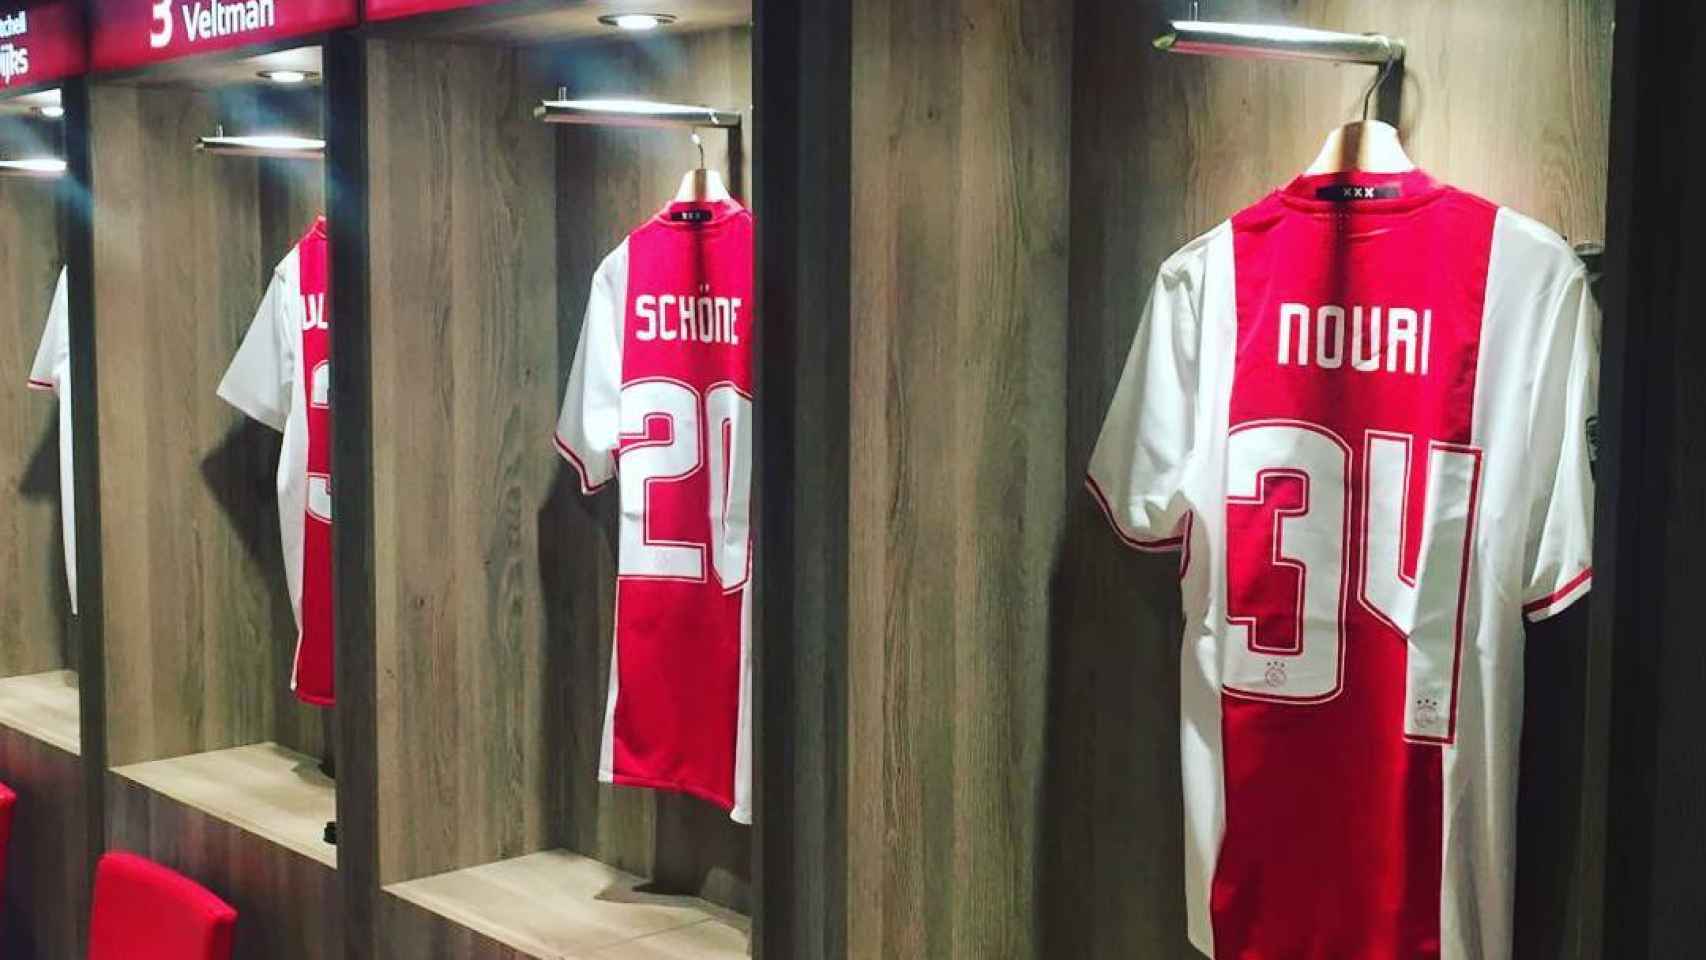 La camiseta de Nouri en el vestuario del Ajax